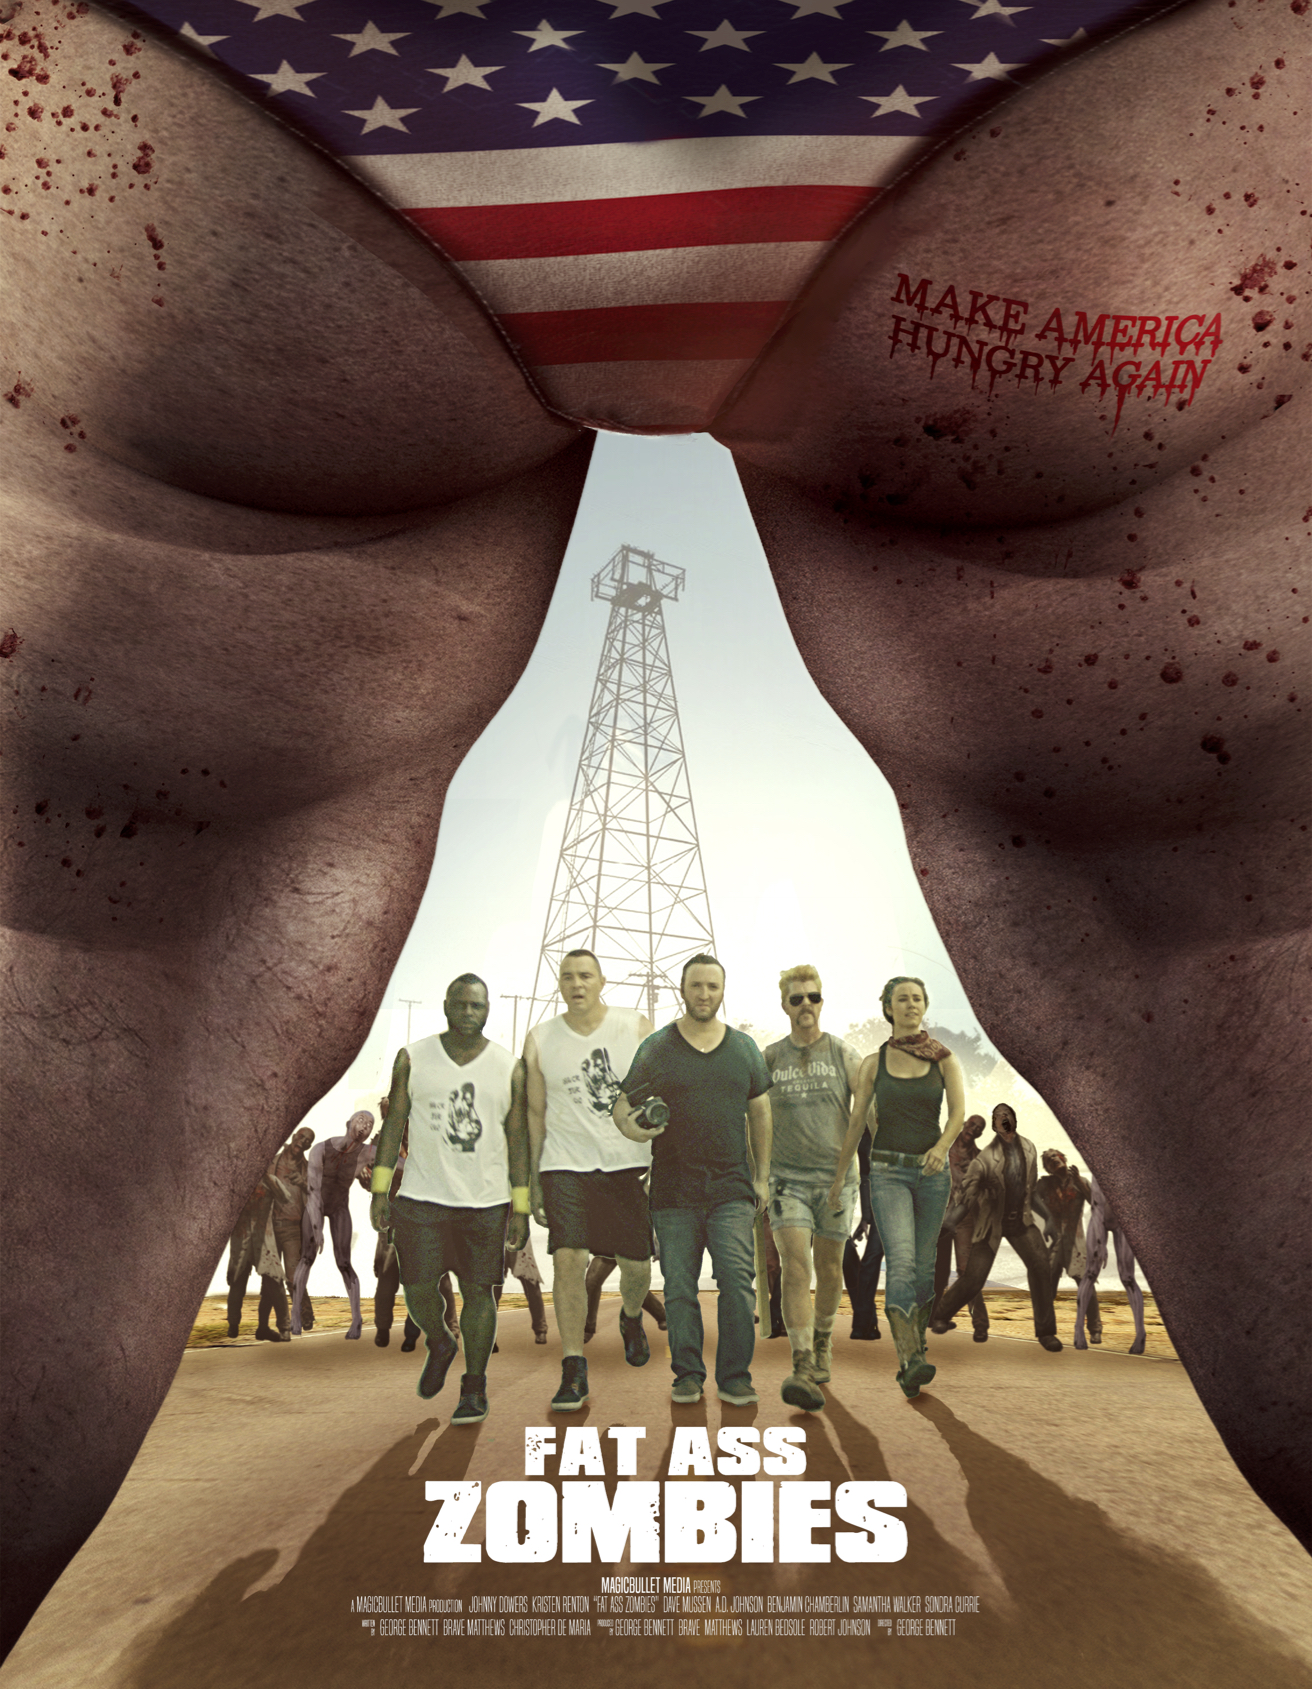 Nonton film American Zombieland layarkaca21 indoxx1 ganool online streaming terbaru